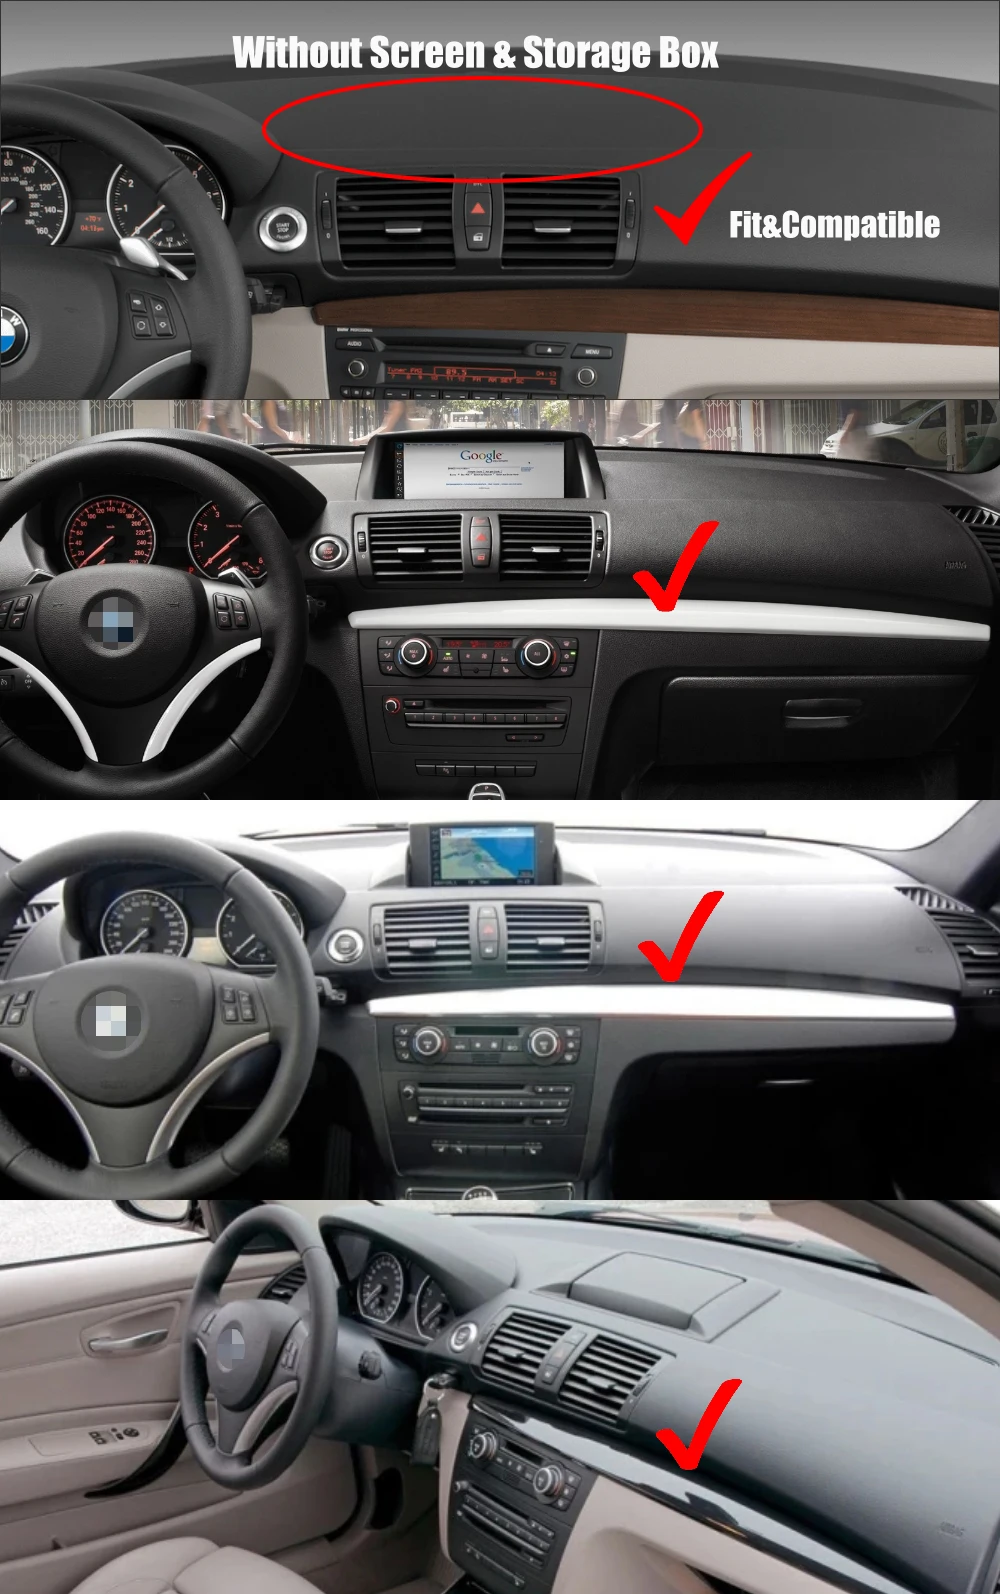 Автомобильный мультимедийный плеер стерео gps DVD радио навигация NAVI Android CIC CCC NBT для BMW 1 серии M1 E81 E82 E87 E88 2004~ 2013